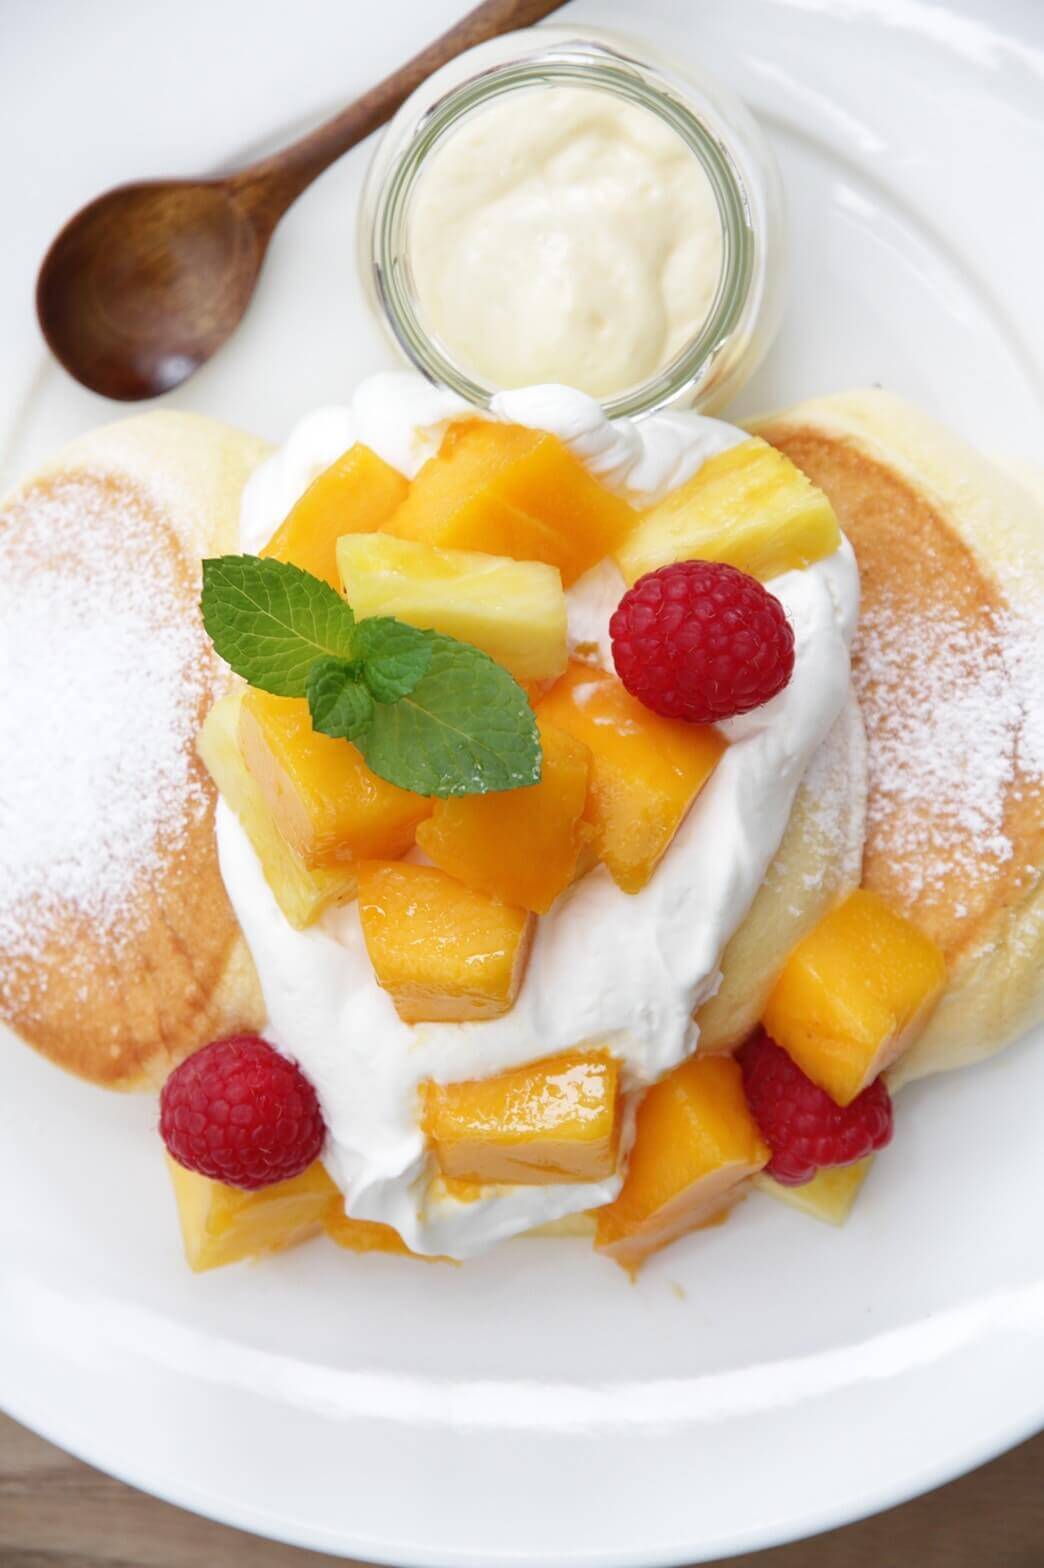 幸せのパンケーキの『完熟アップルマンゴーとパインのレモンカスタードパンケーキ』